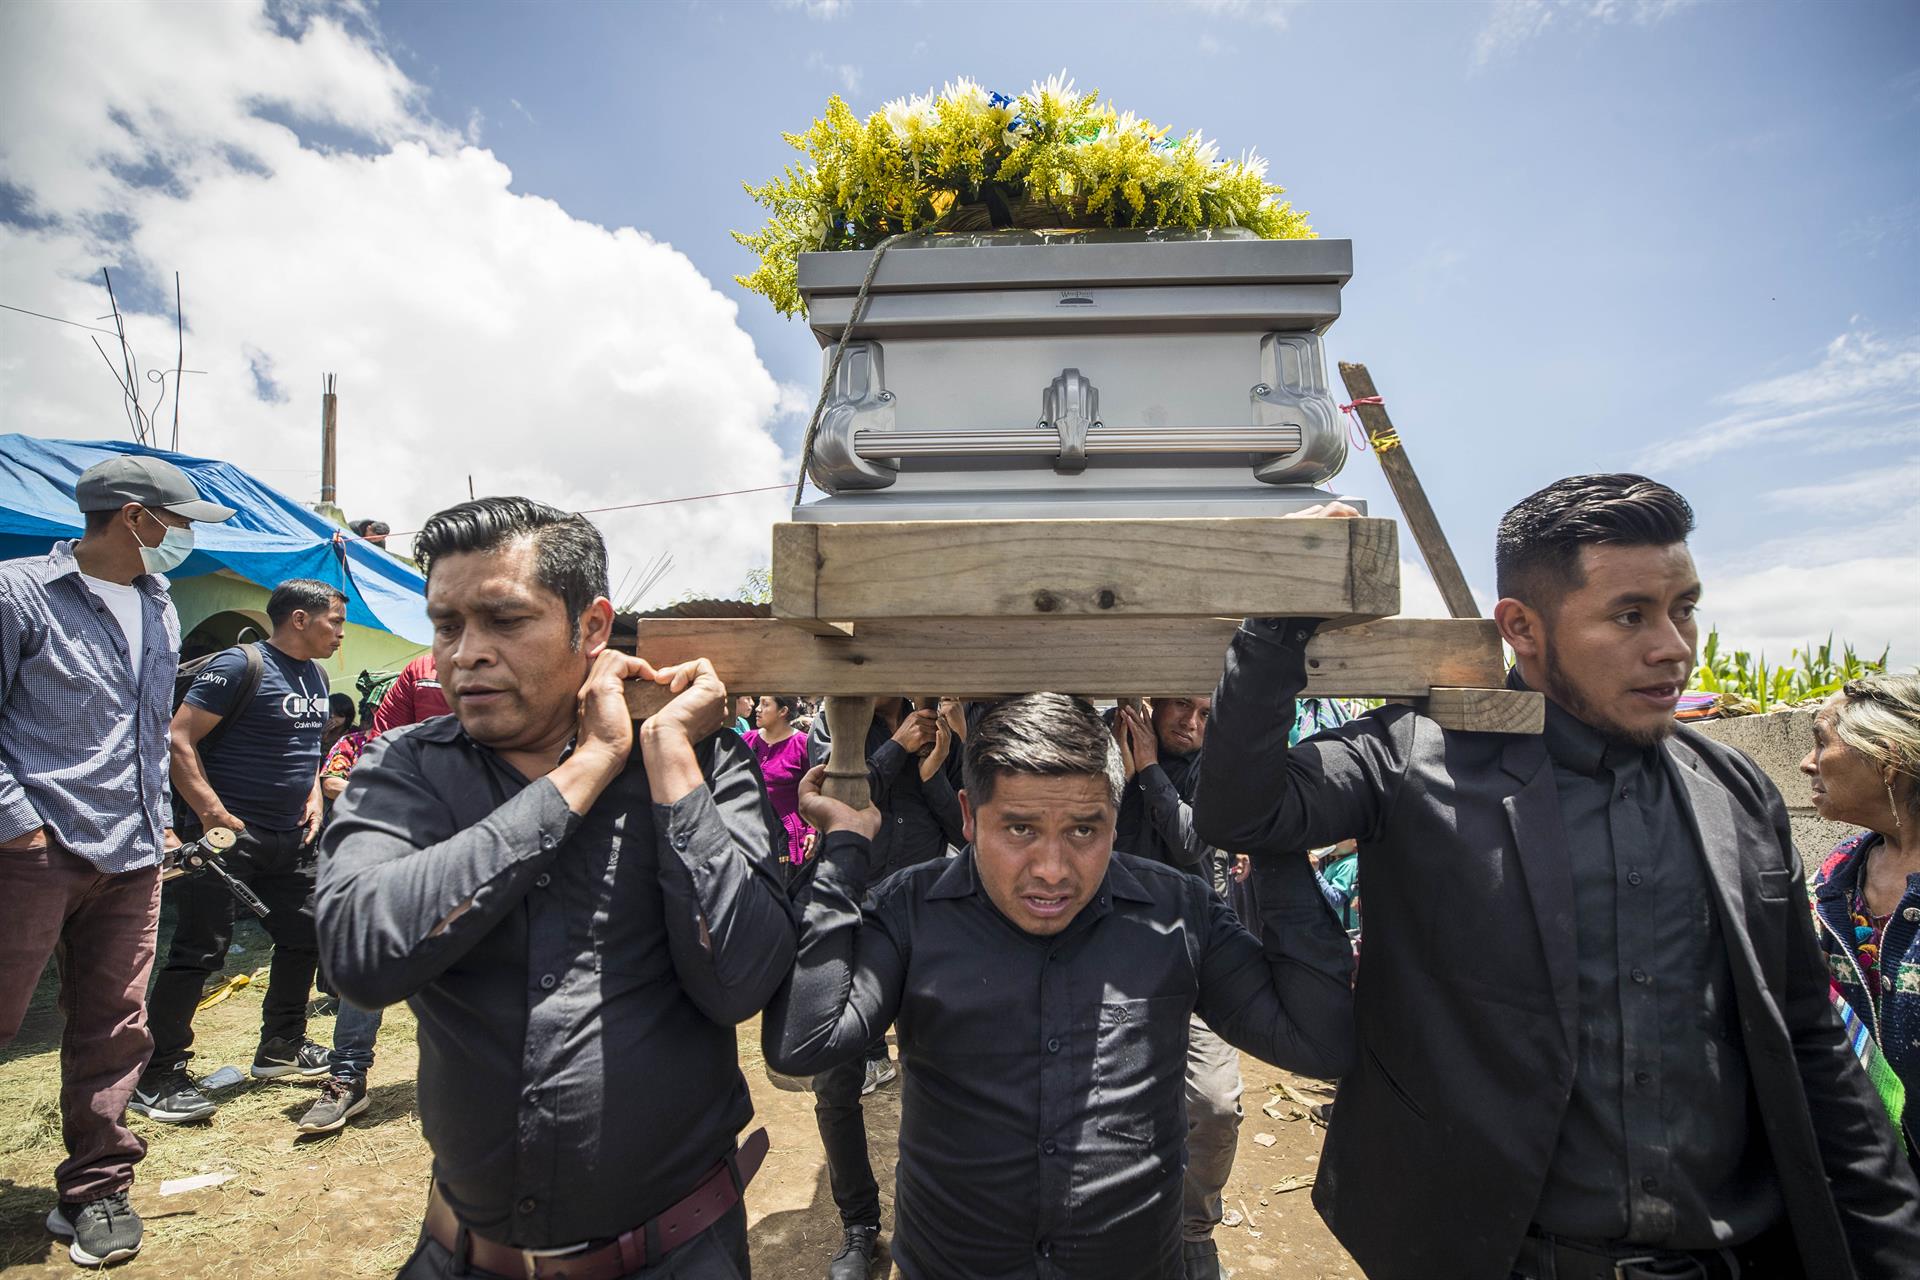 Los 21 guatemaltecos hacen parte de un listado de 53 personas que murieron asfixiadas en un tráiler abandonado por traficantes de personas en una carretera de San Antonio, Texas. Imagen de archivo. EFE/ Esteban Biba
